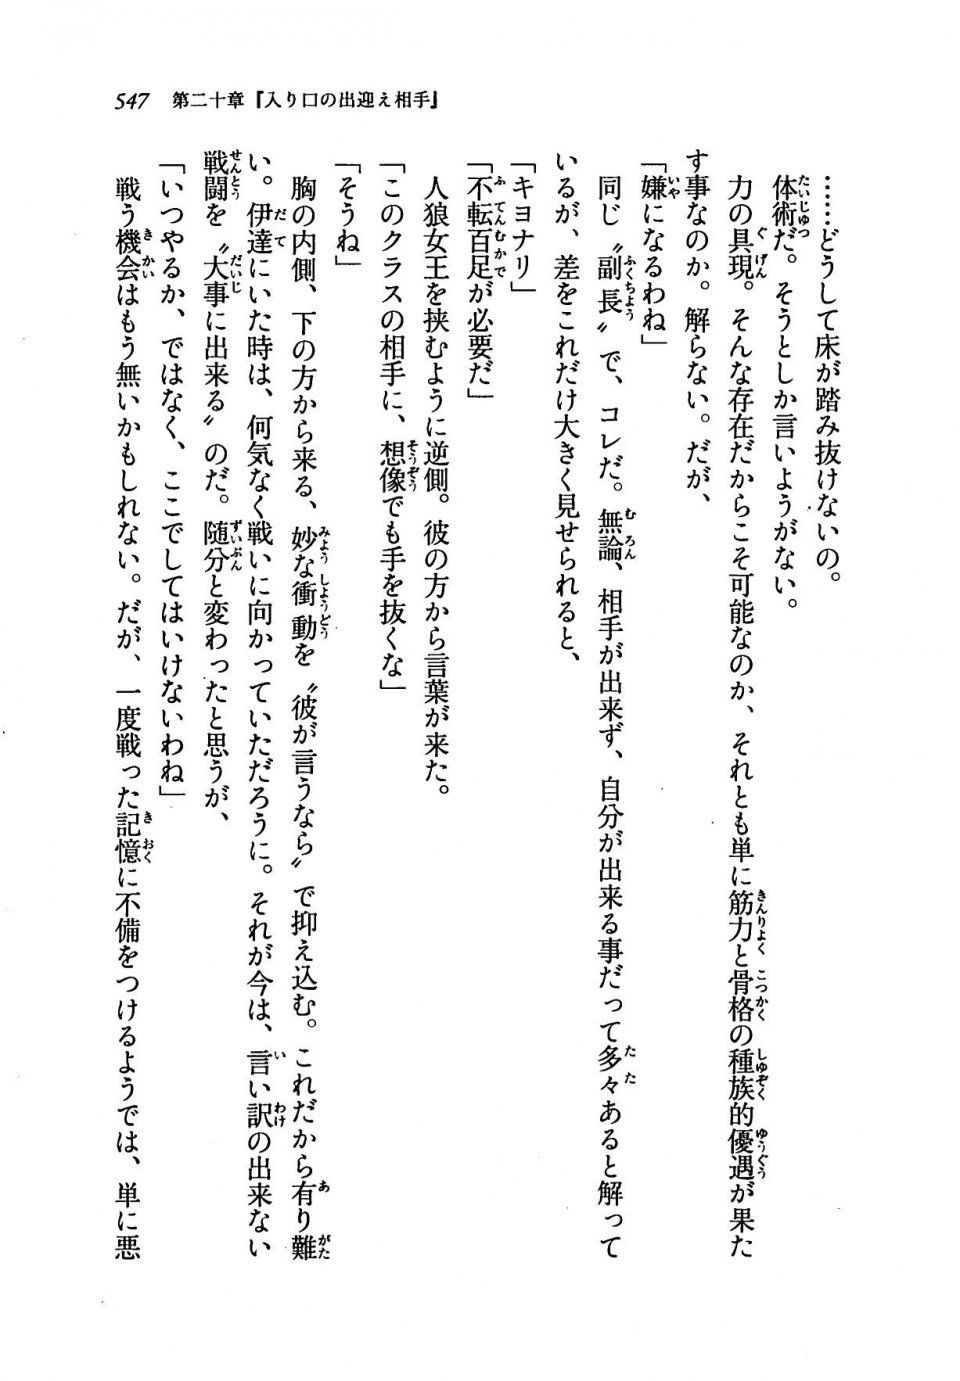 Kyoukai Senjou no Horizon LN Vol 19(8A) - Photo #547